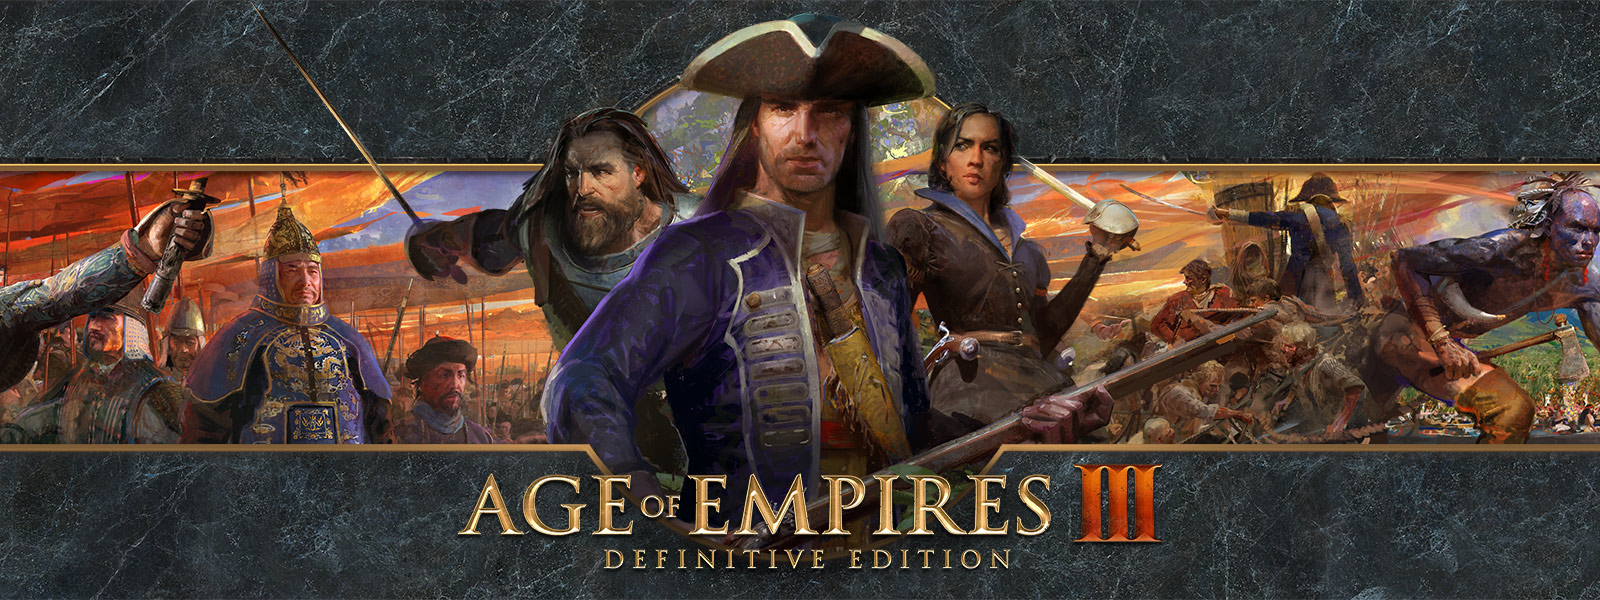 Age of Empires III: Definitive Edition-logo op een achtergrond met oorlogsleiders en hun legers